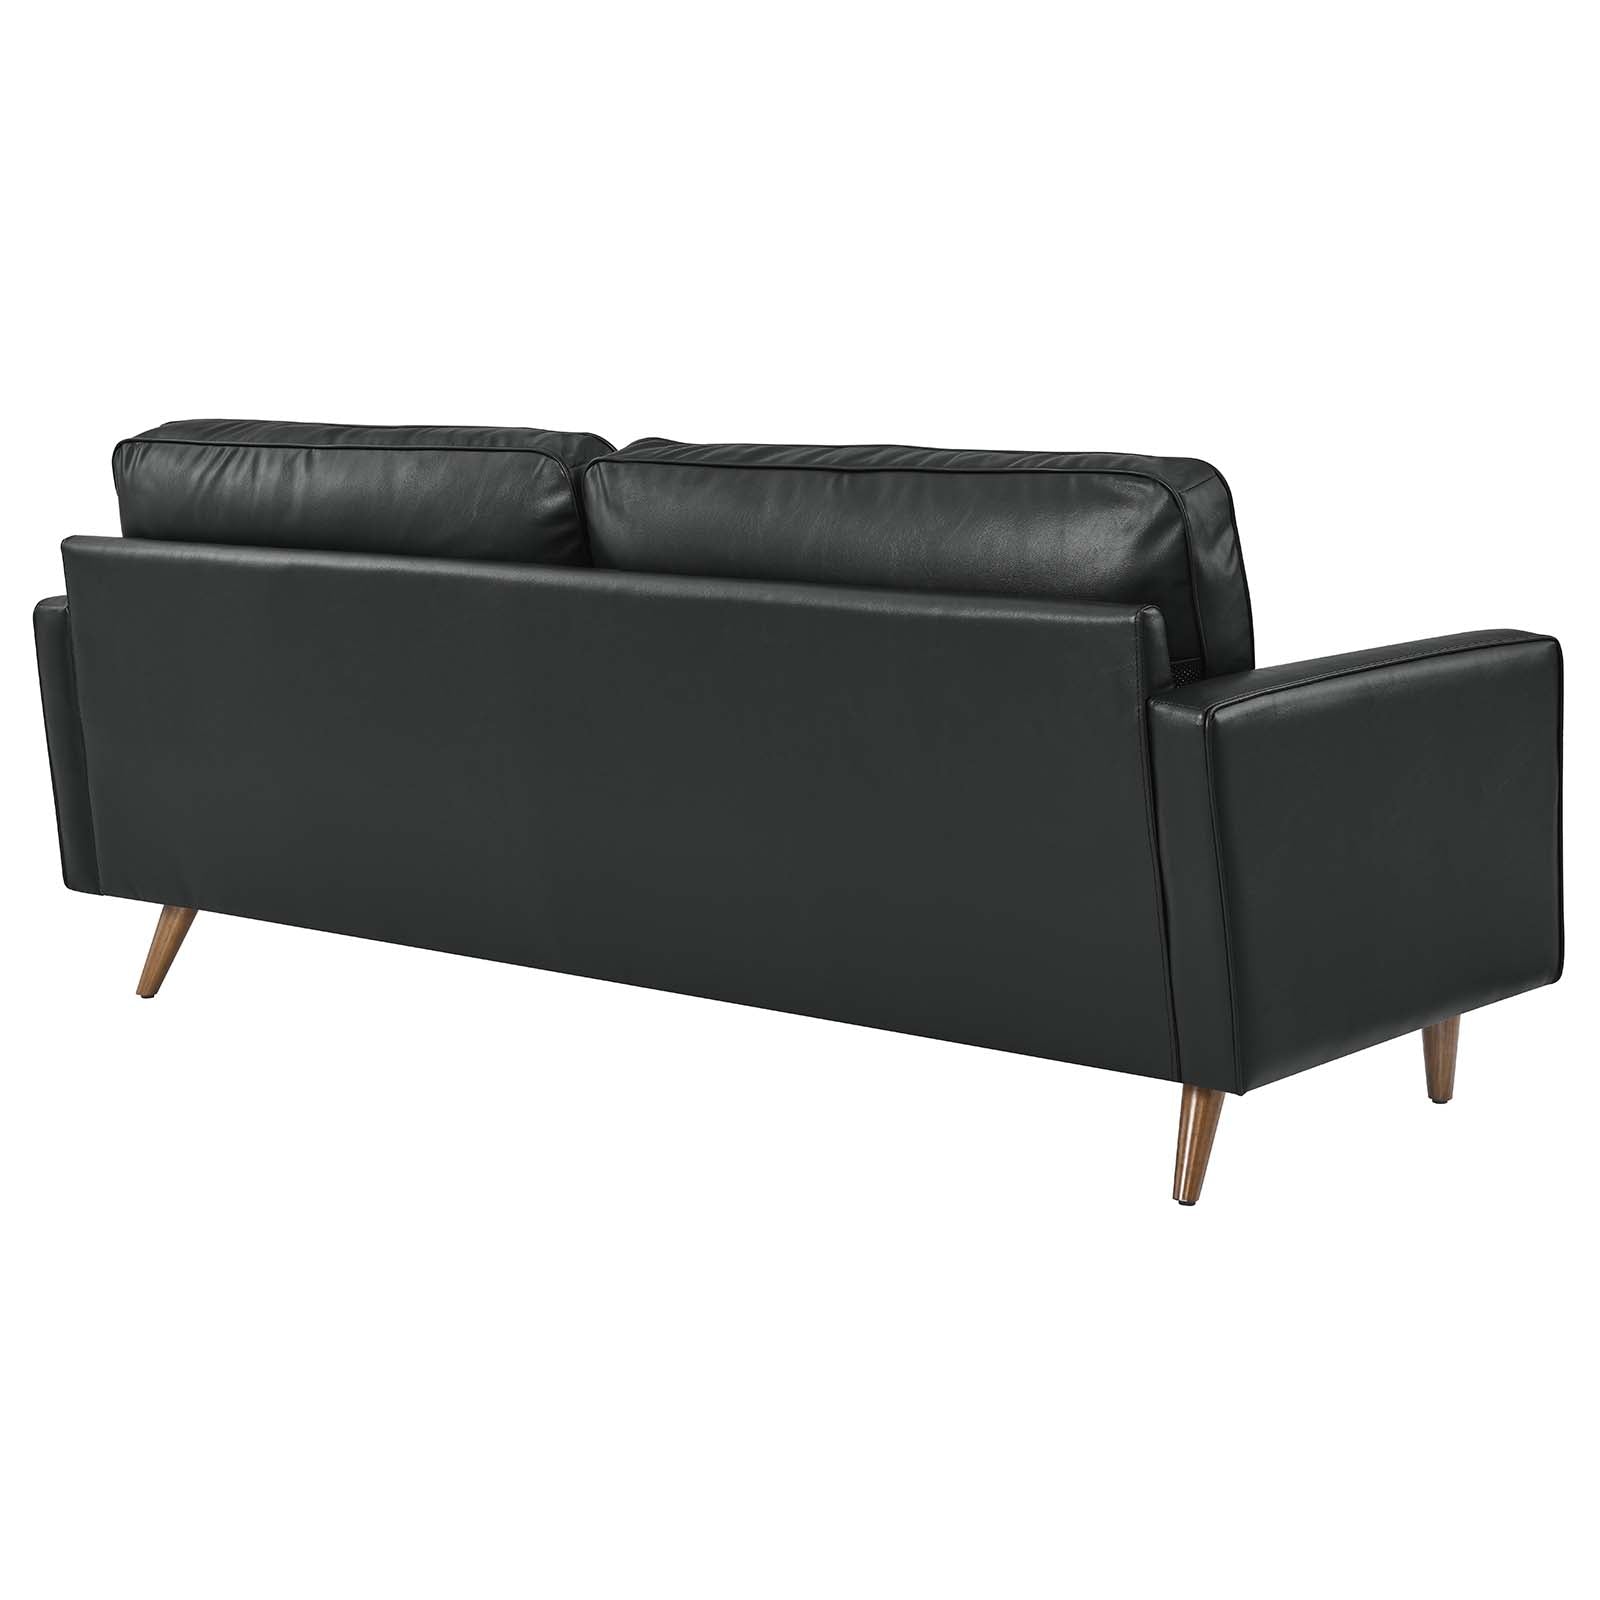 Modway Sofas & Couches - Valour 81" Leather Sofa Black